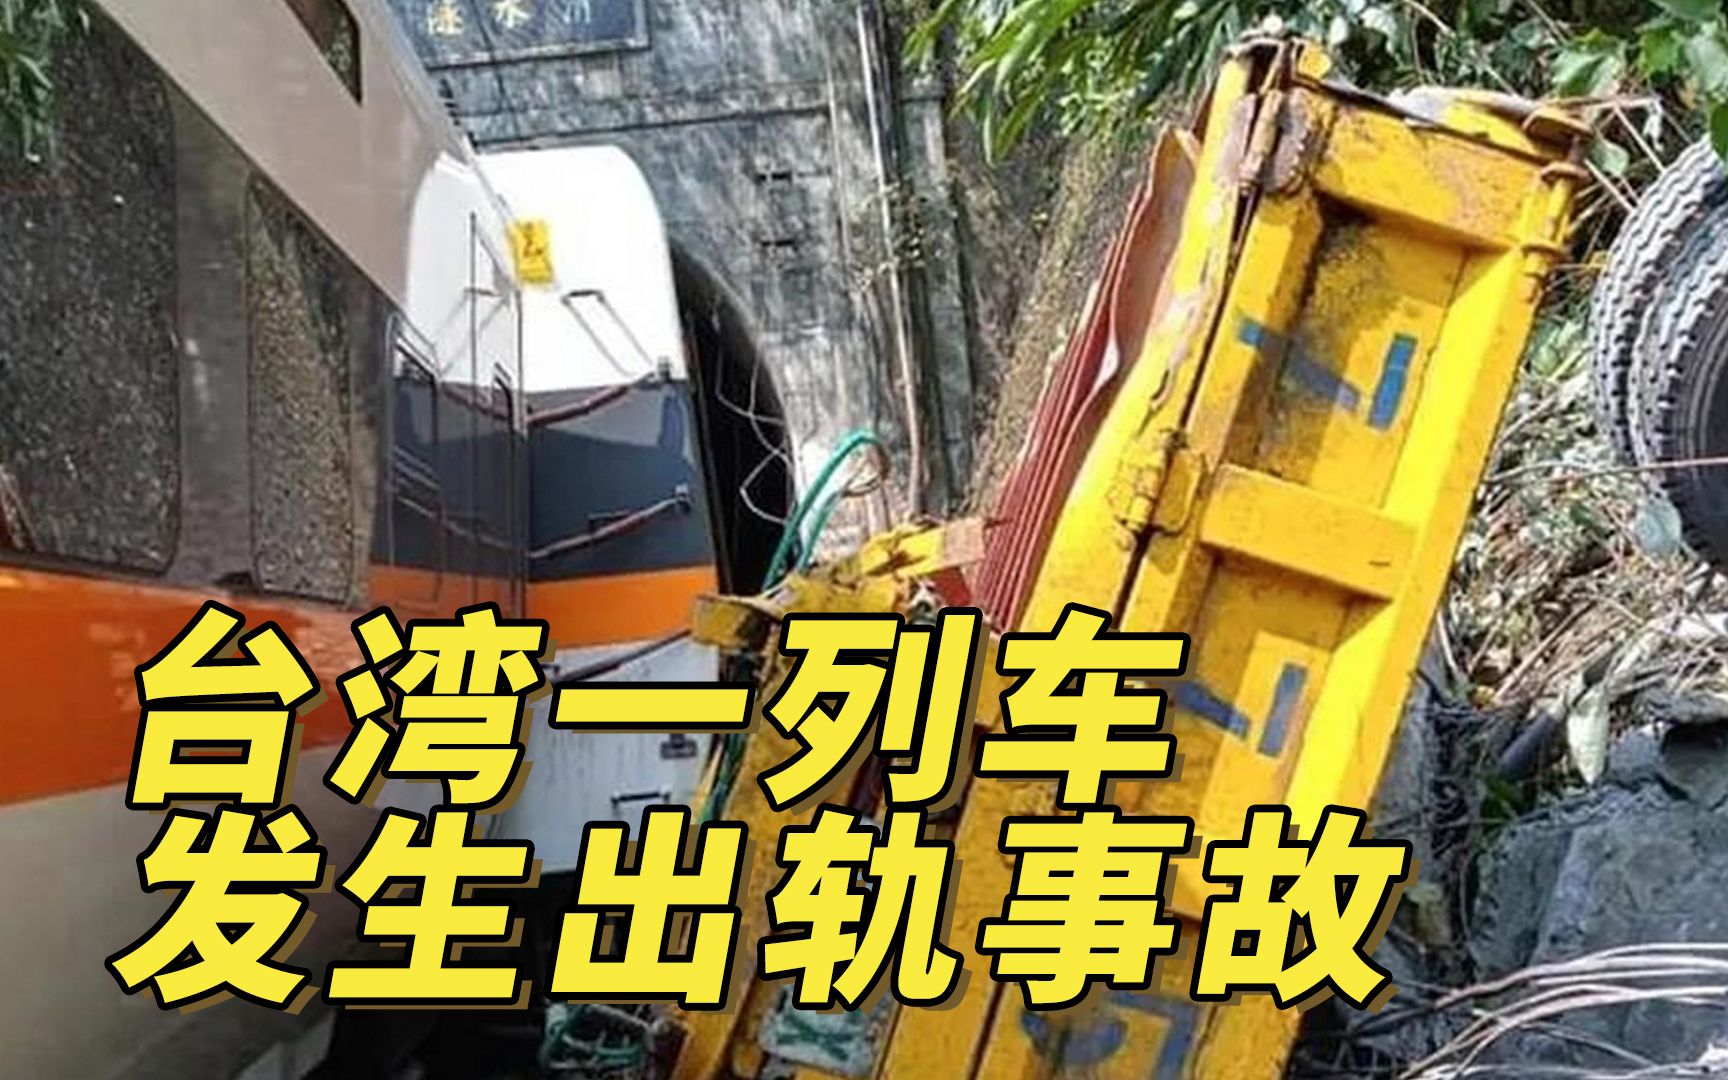 台湾一列车发生出轨事故 台媒称36人无生命迹象